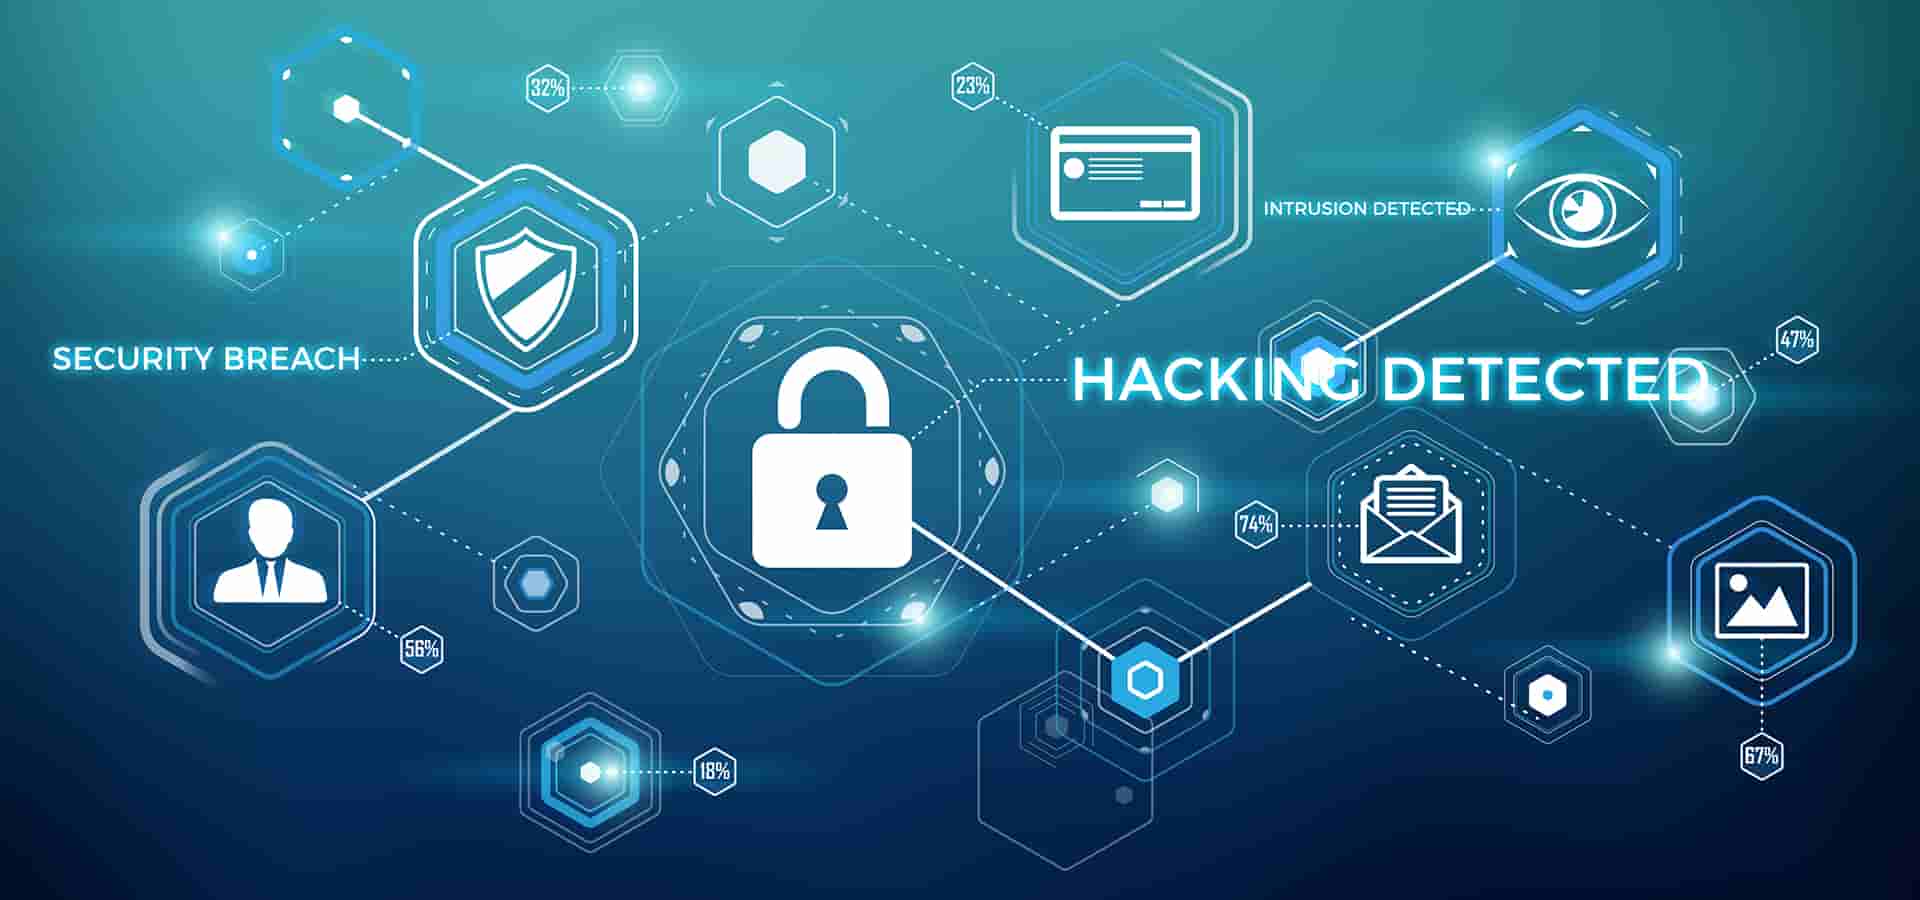 Hacking, uno de los 5 delitos informáticos más comunes en España